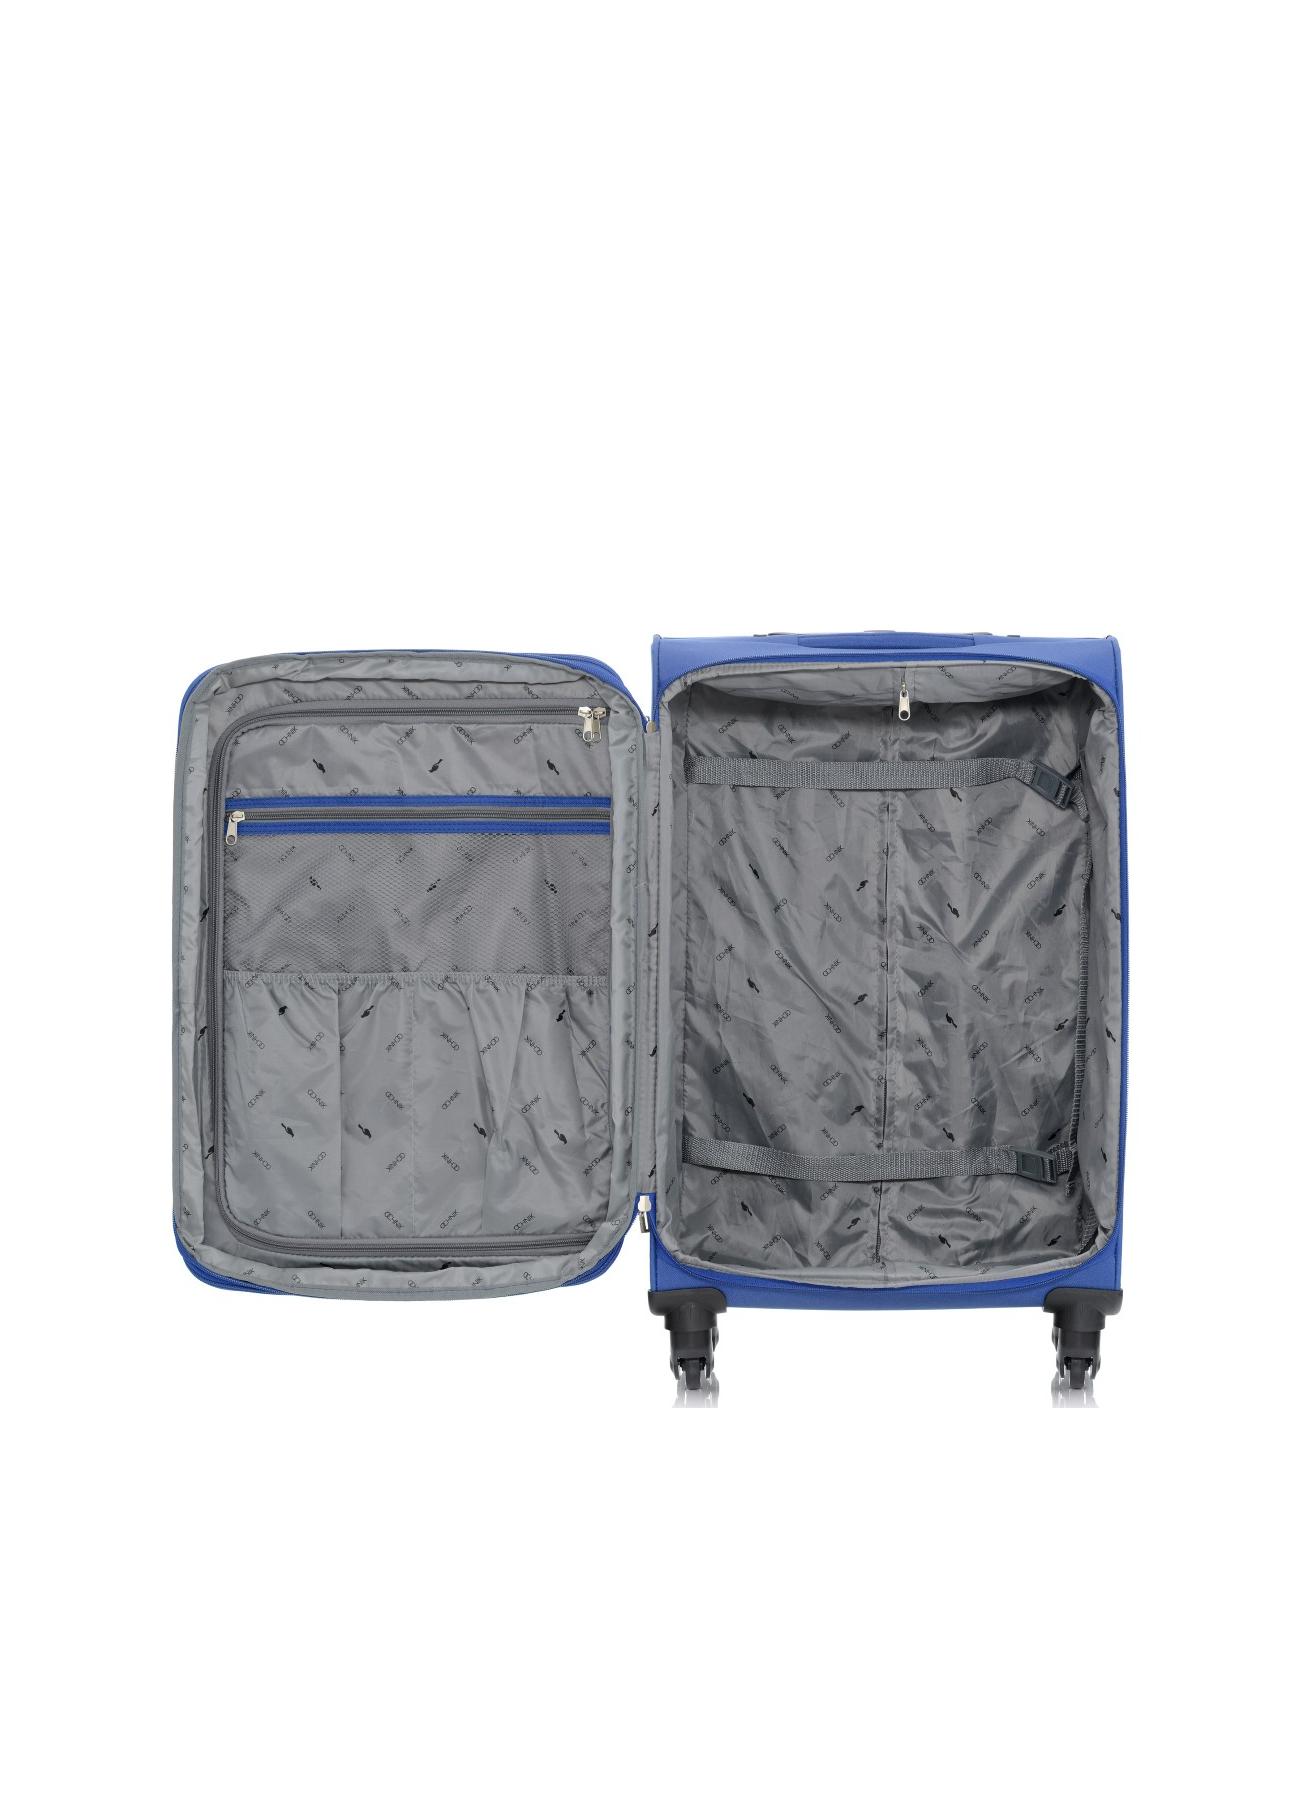 Duża walizka na kółkach WALNY-0019-61-28(W17)